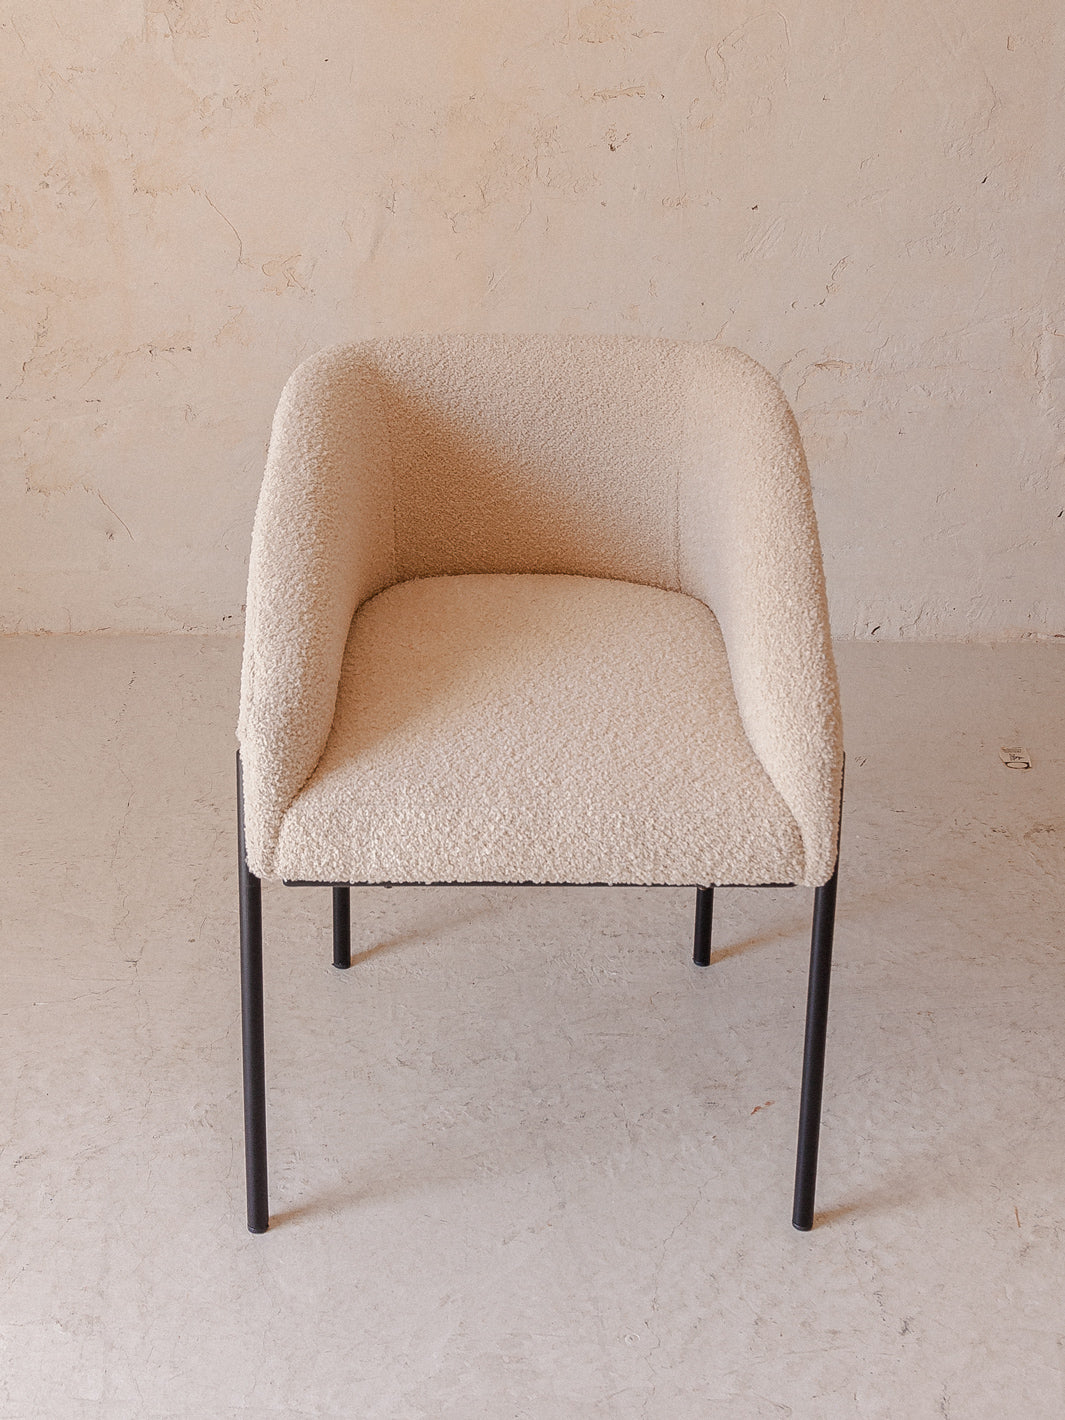 Karale chair in cream terry cloth.